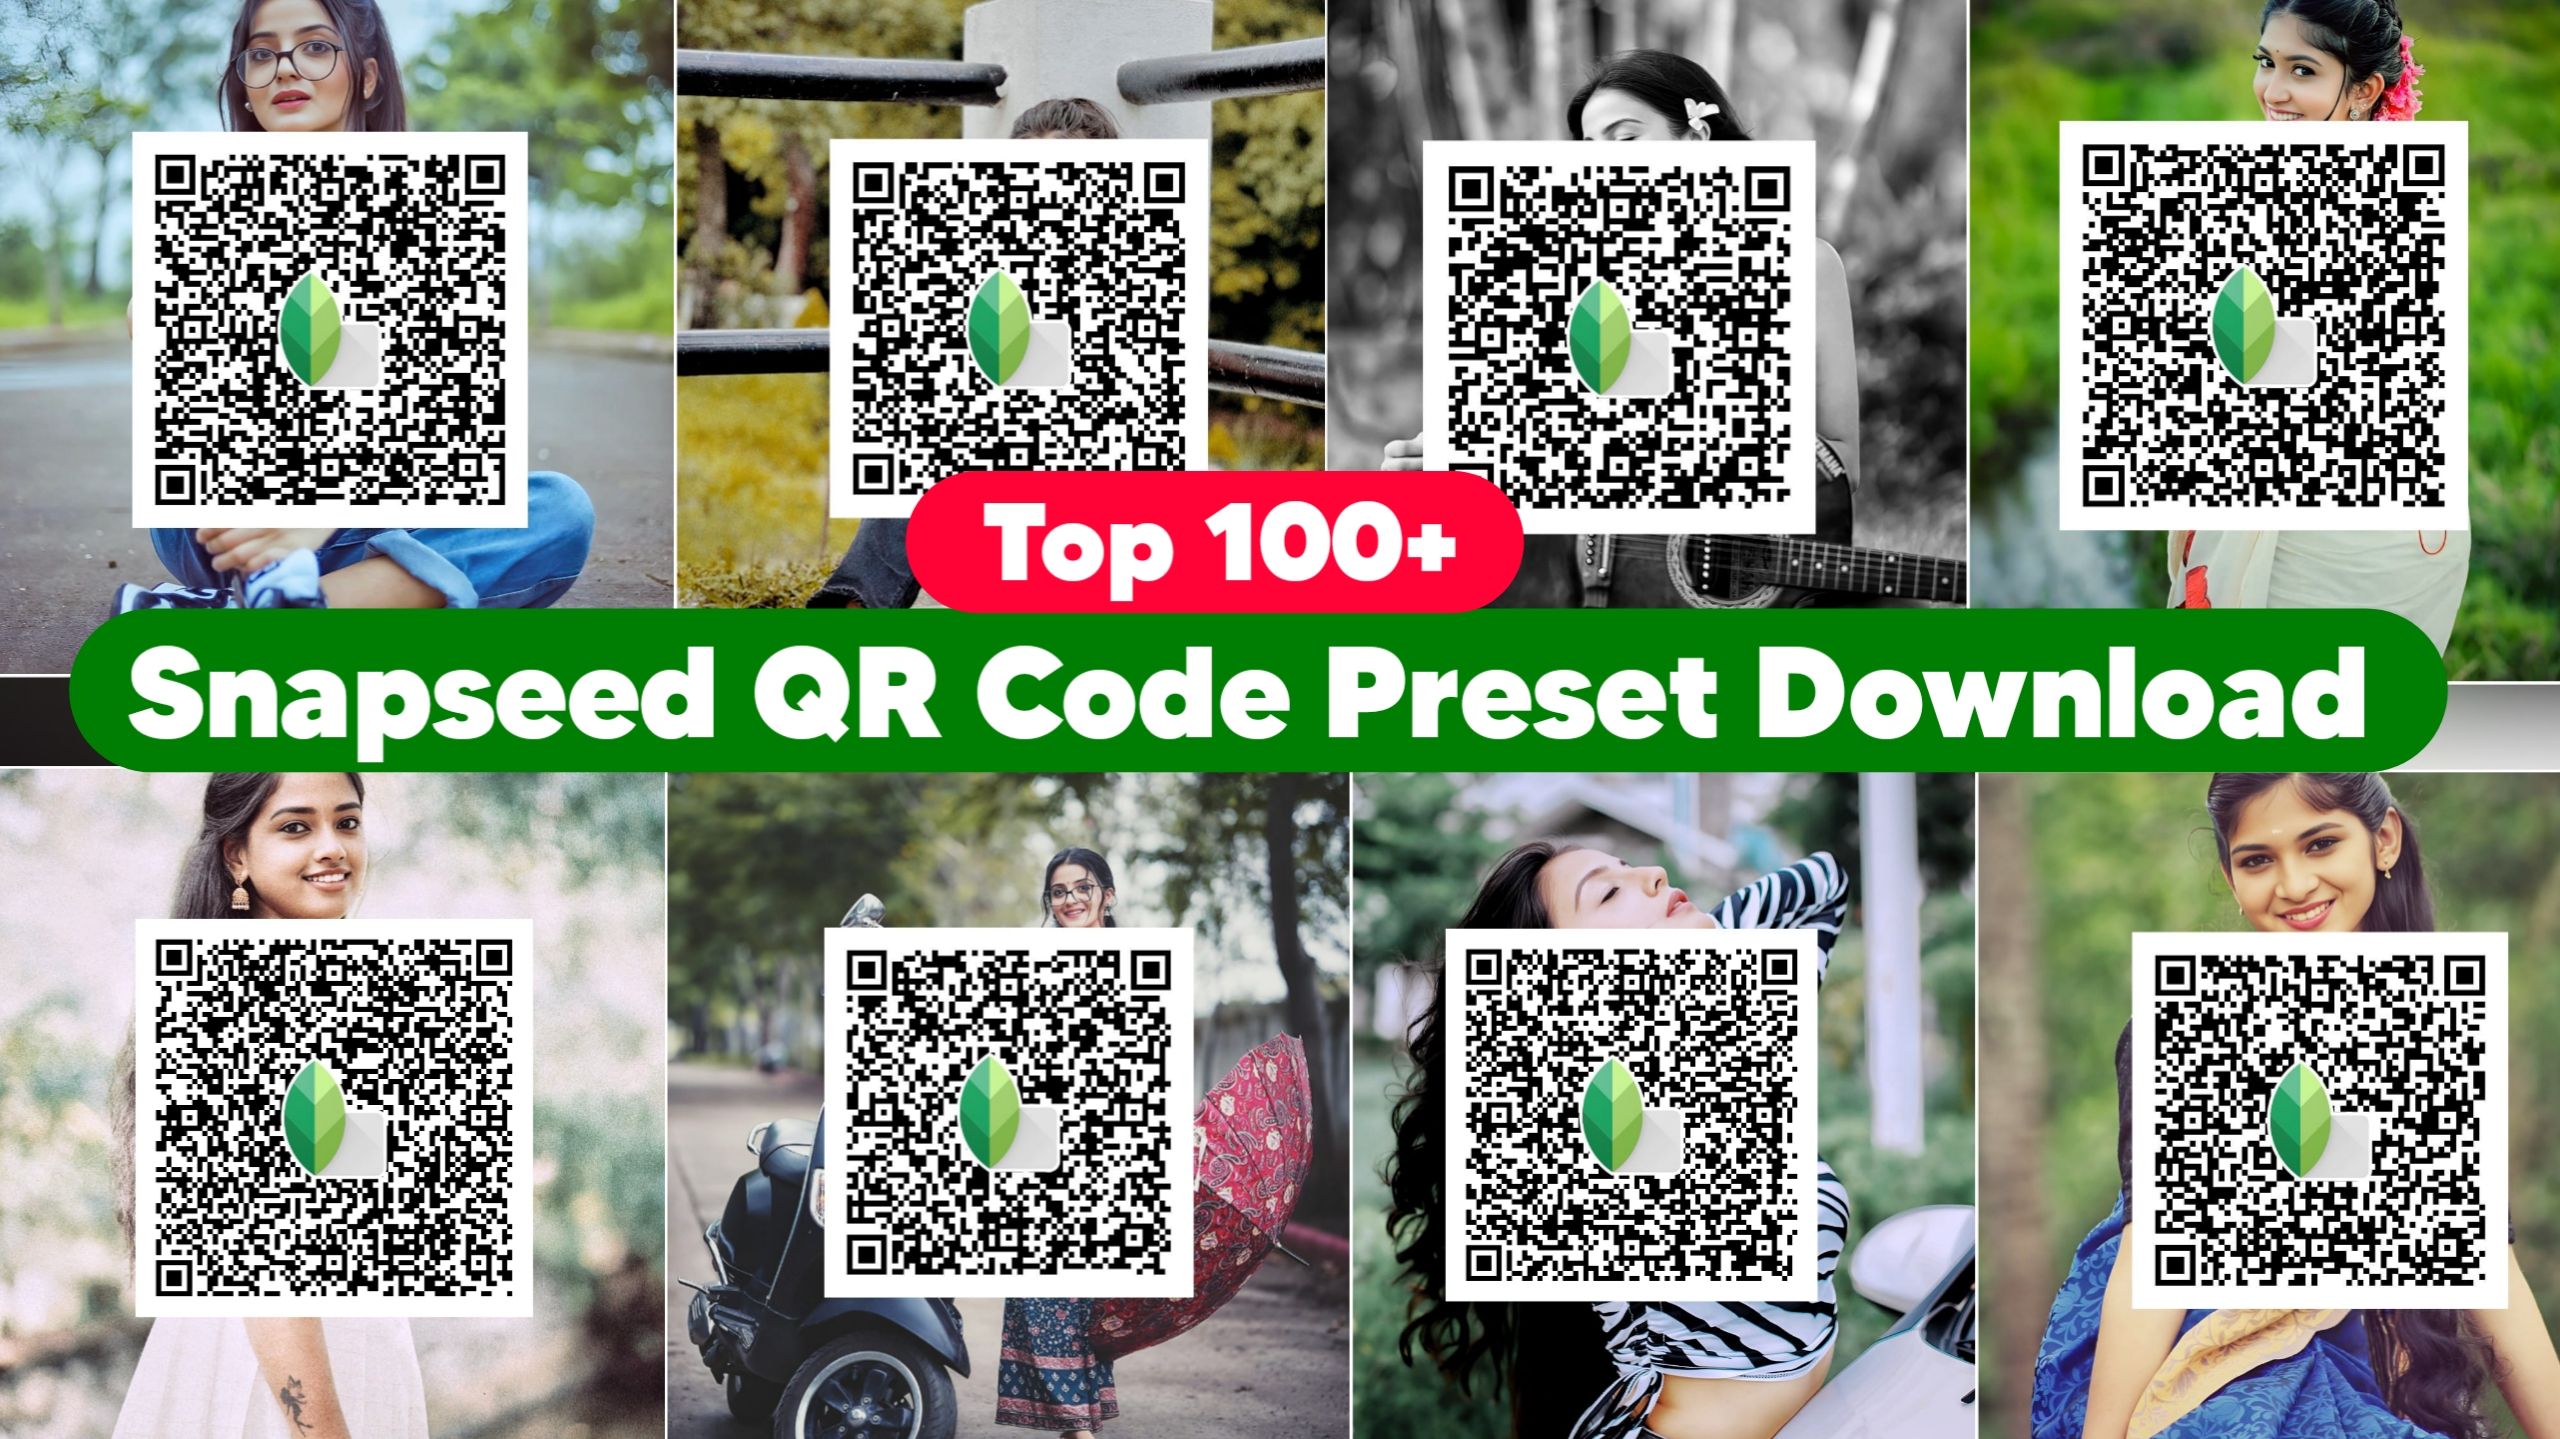 Top 100+ Snapseed QR Code Preset Download